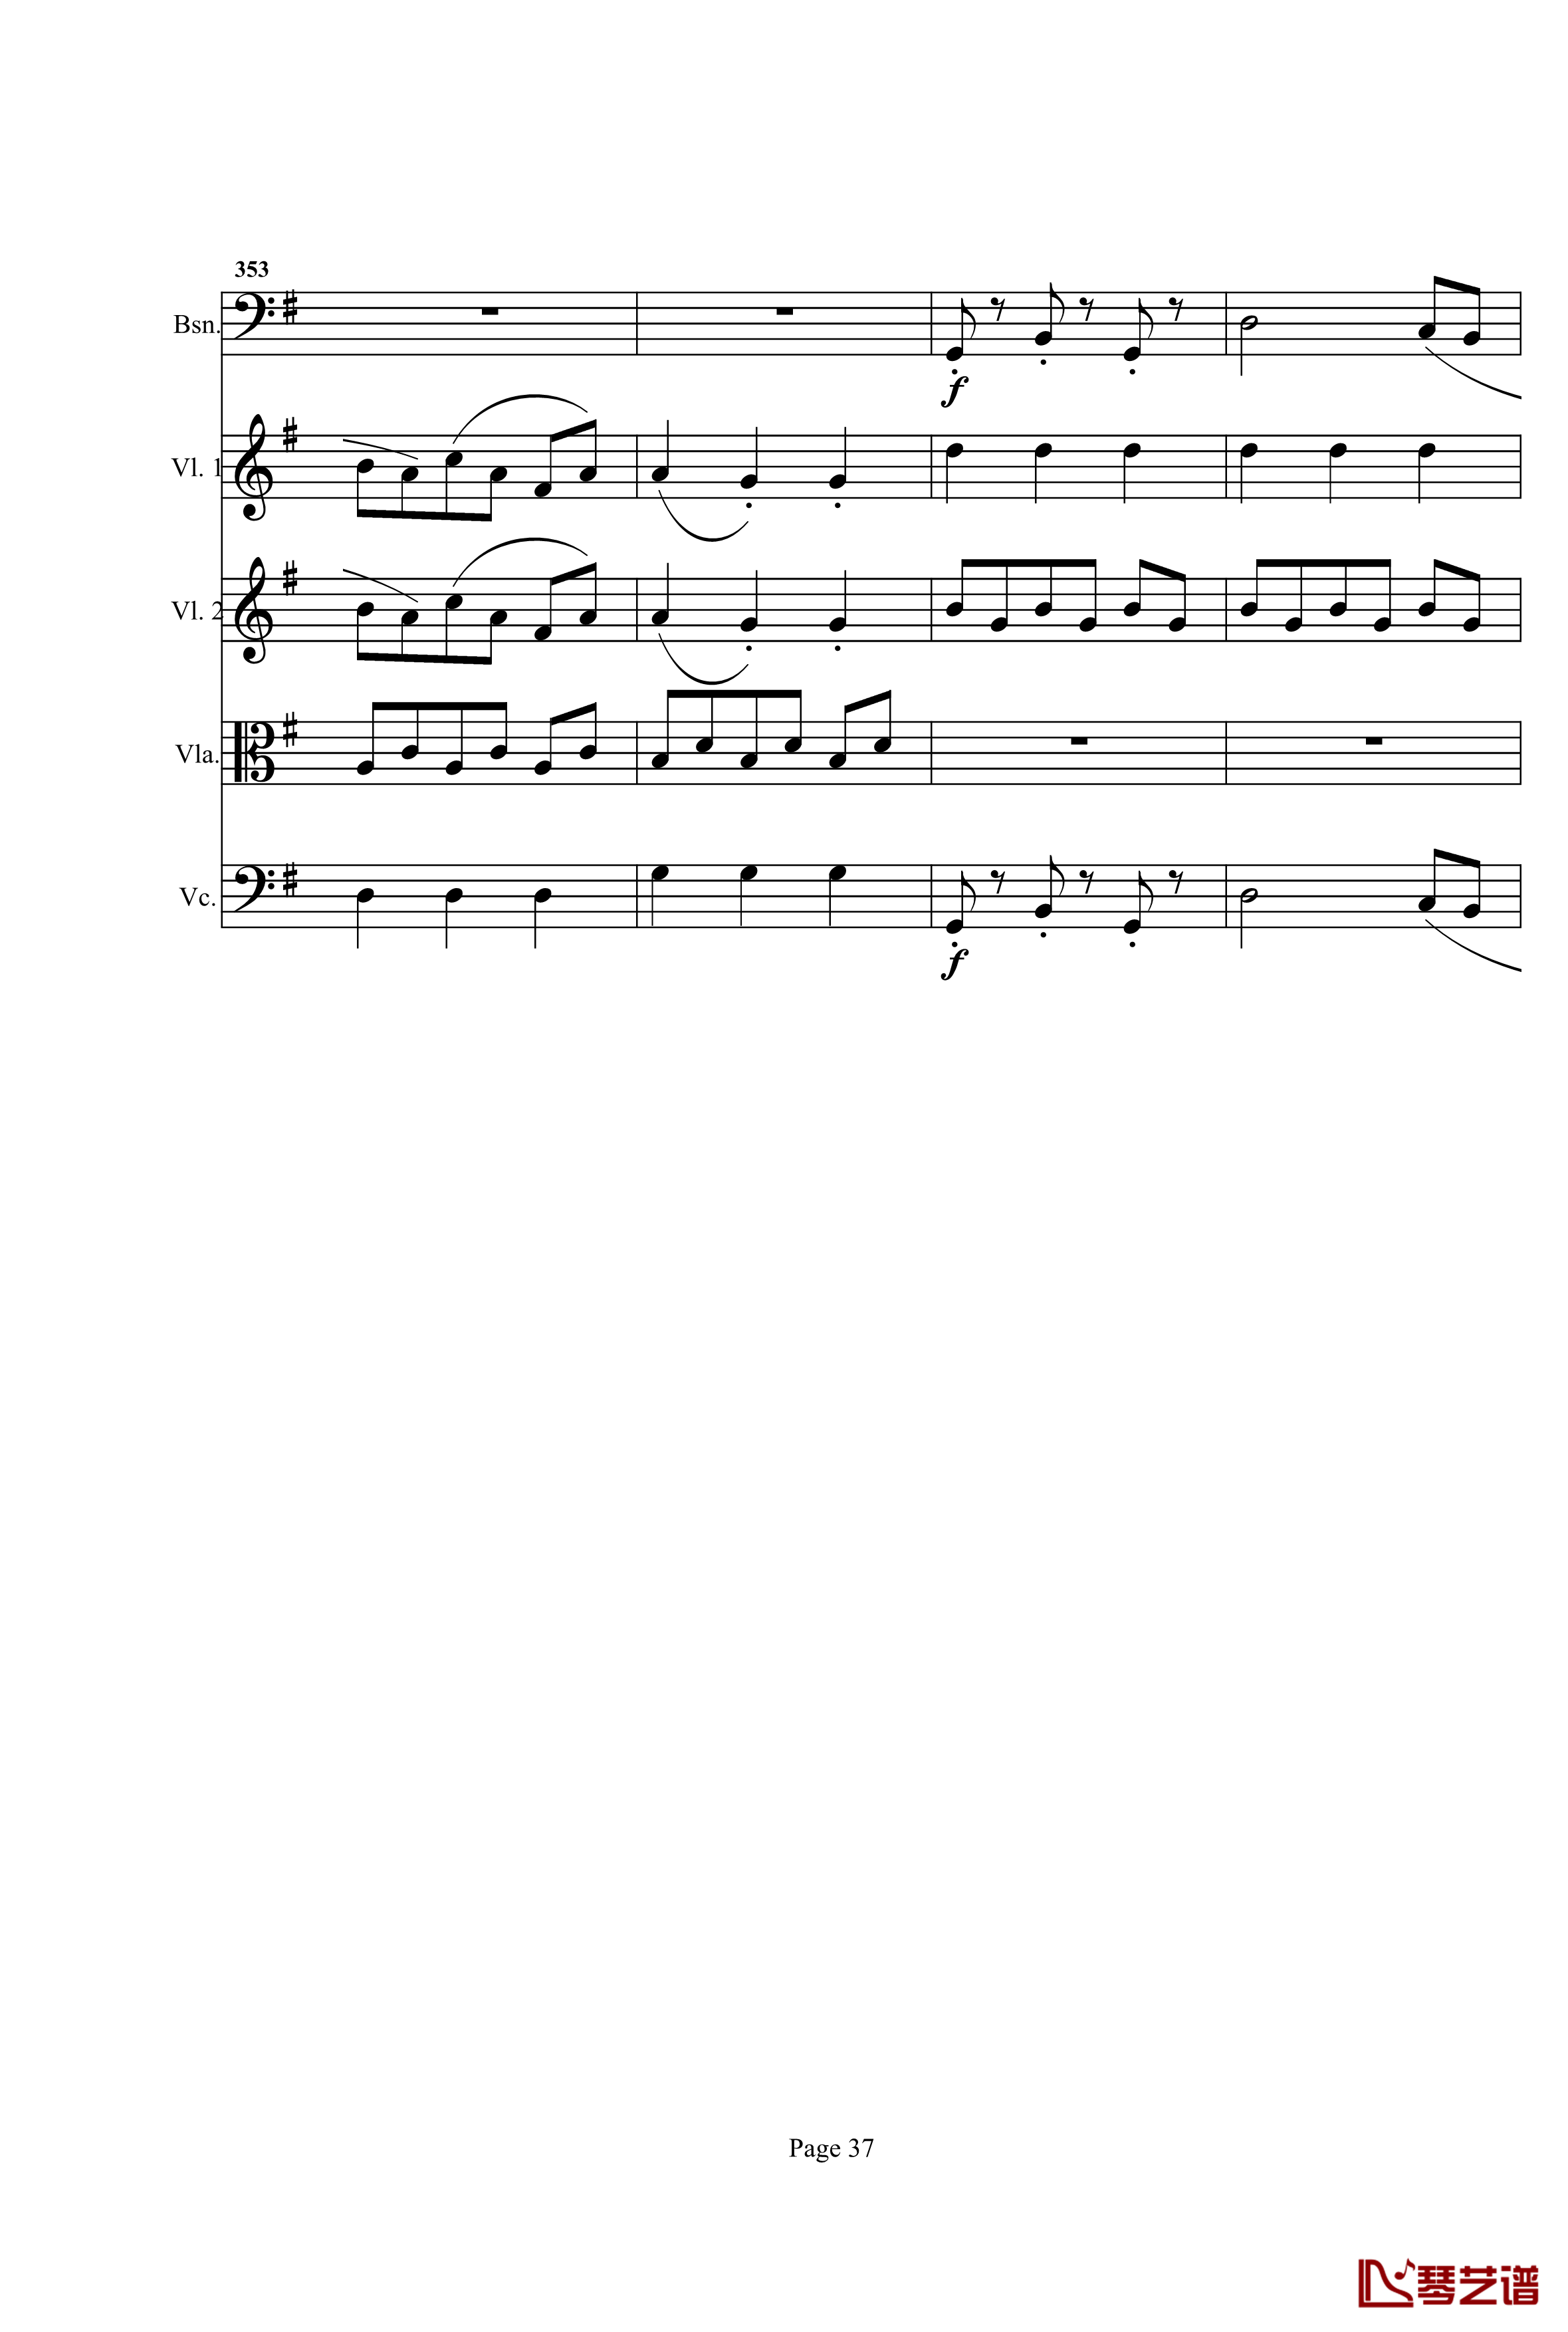 奏鸣曲之交响钢琴谱-第25首-Ⅰ-贝多芬-beethoven37